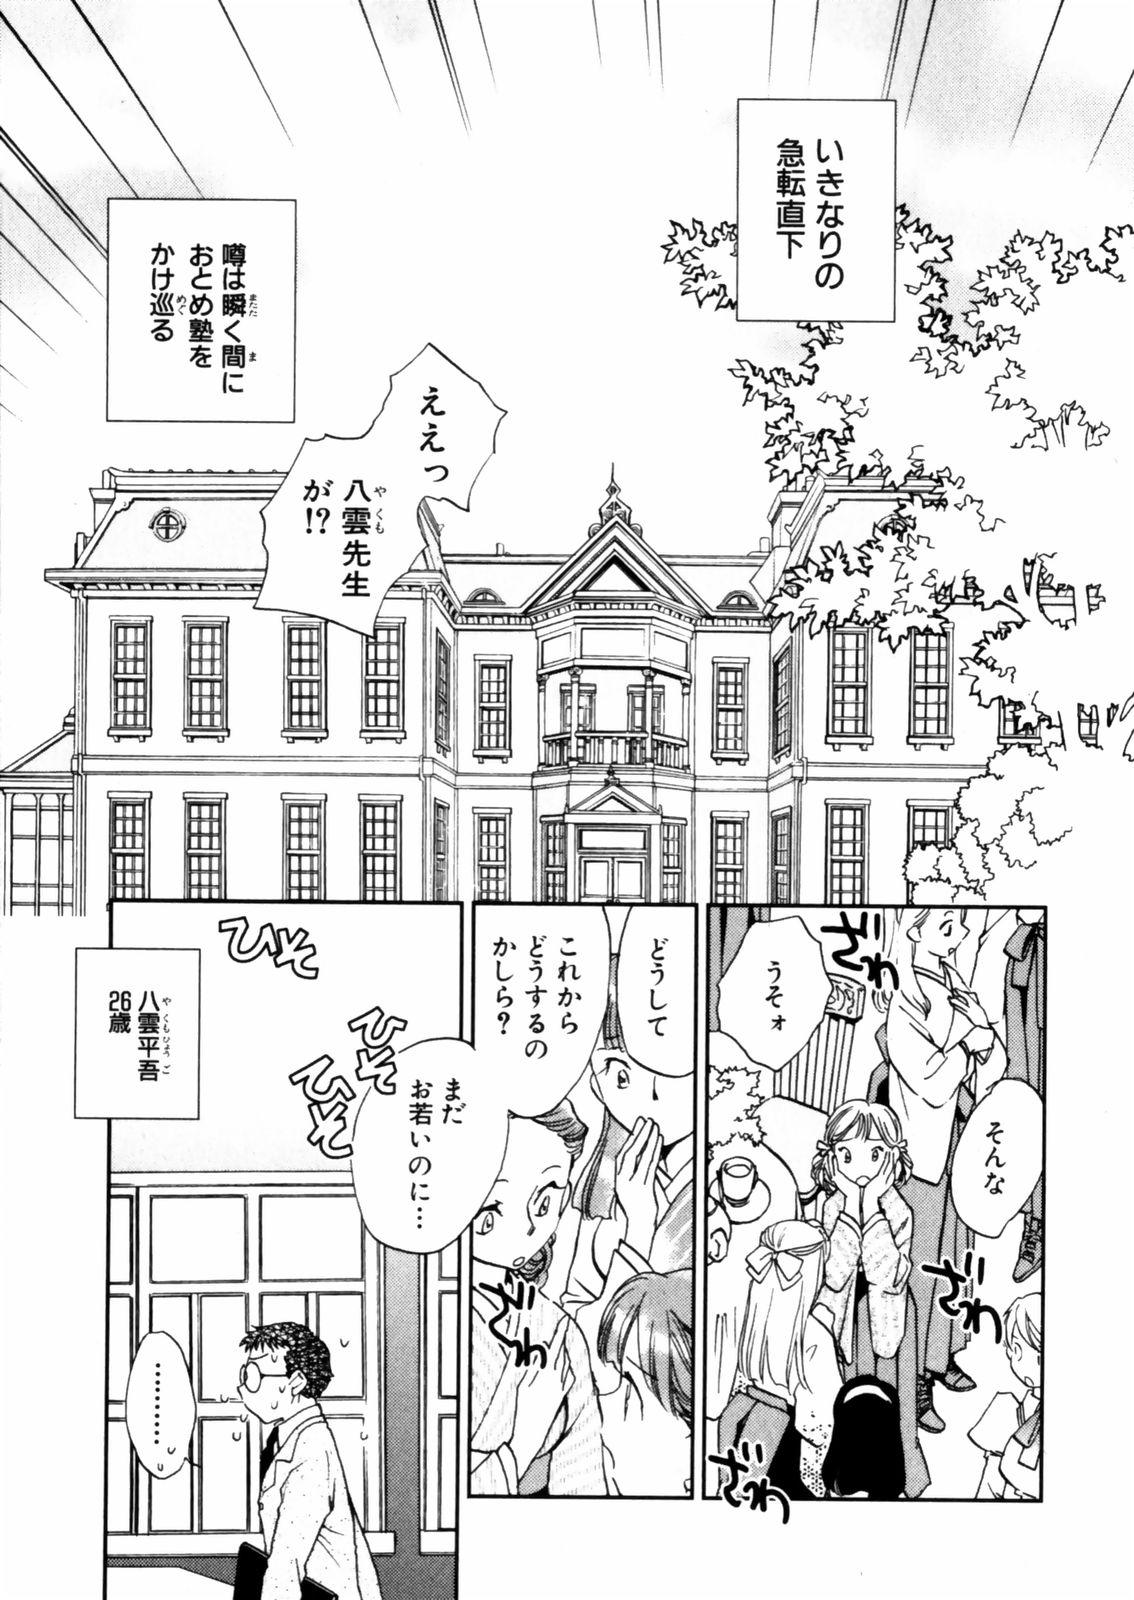 [Okano Ahiru] Hanasake ! Otome Juku (Otome Private Tutoring School) Vol.2 22